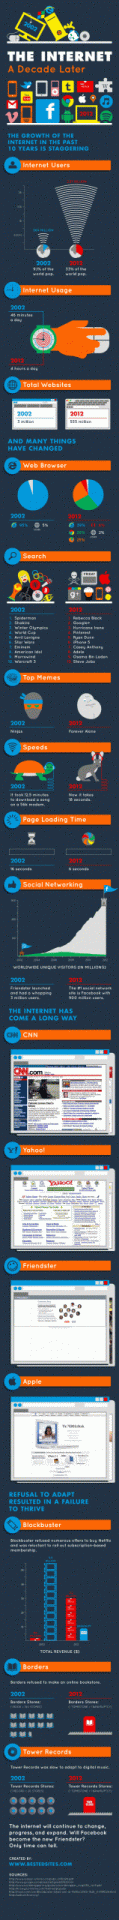 Das Internet - lange Bildgeschichte